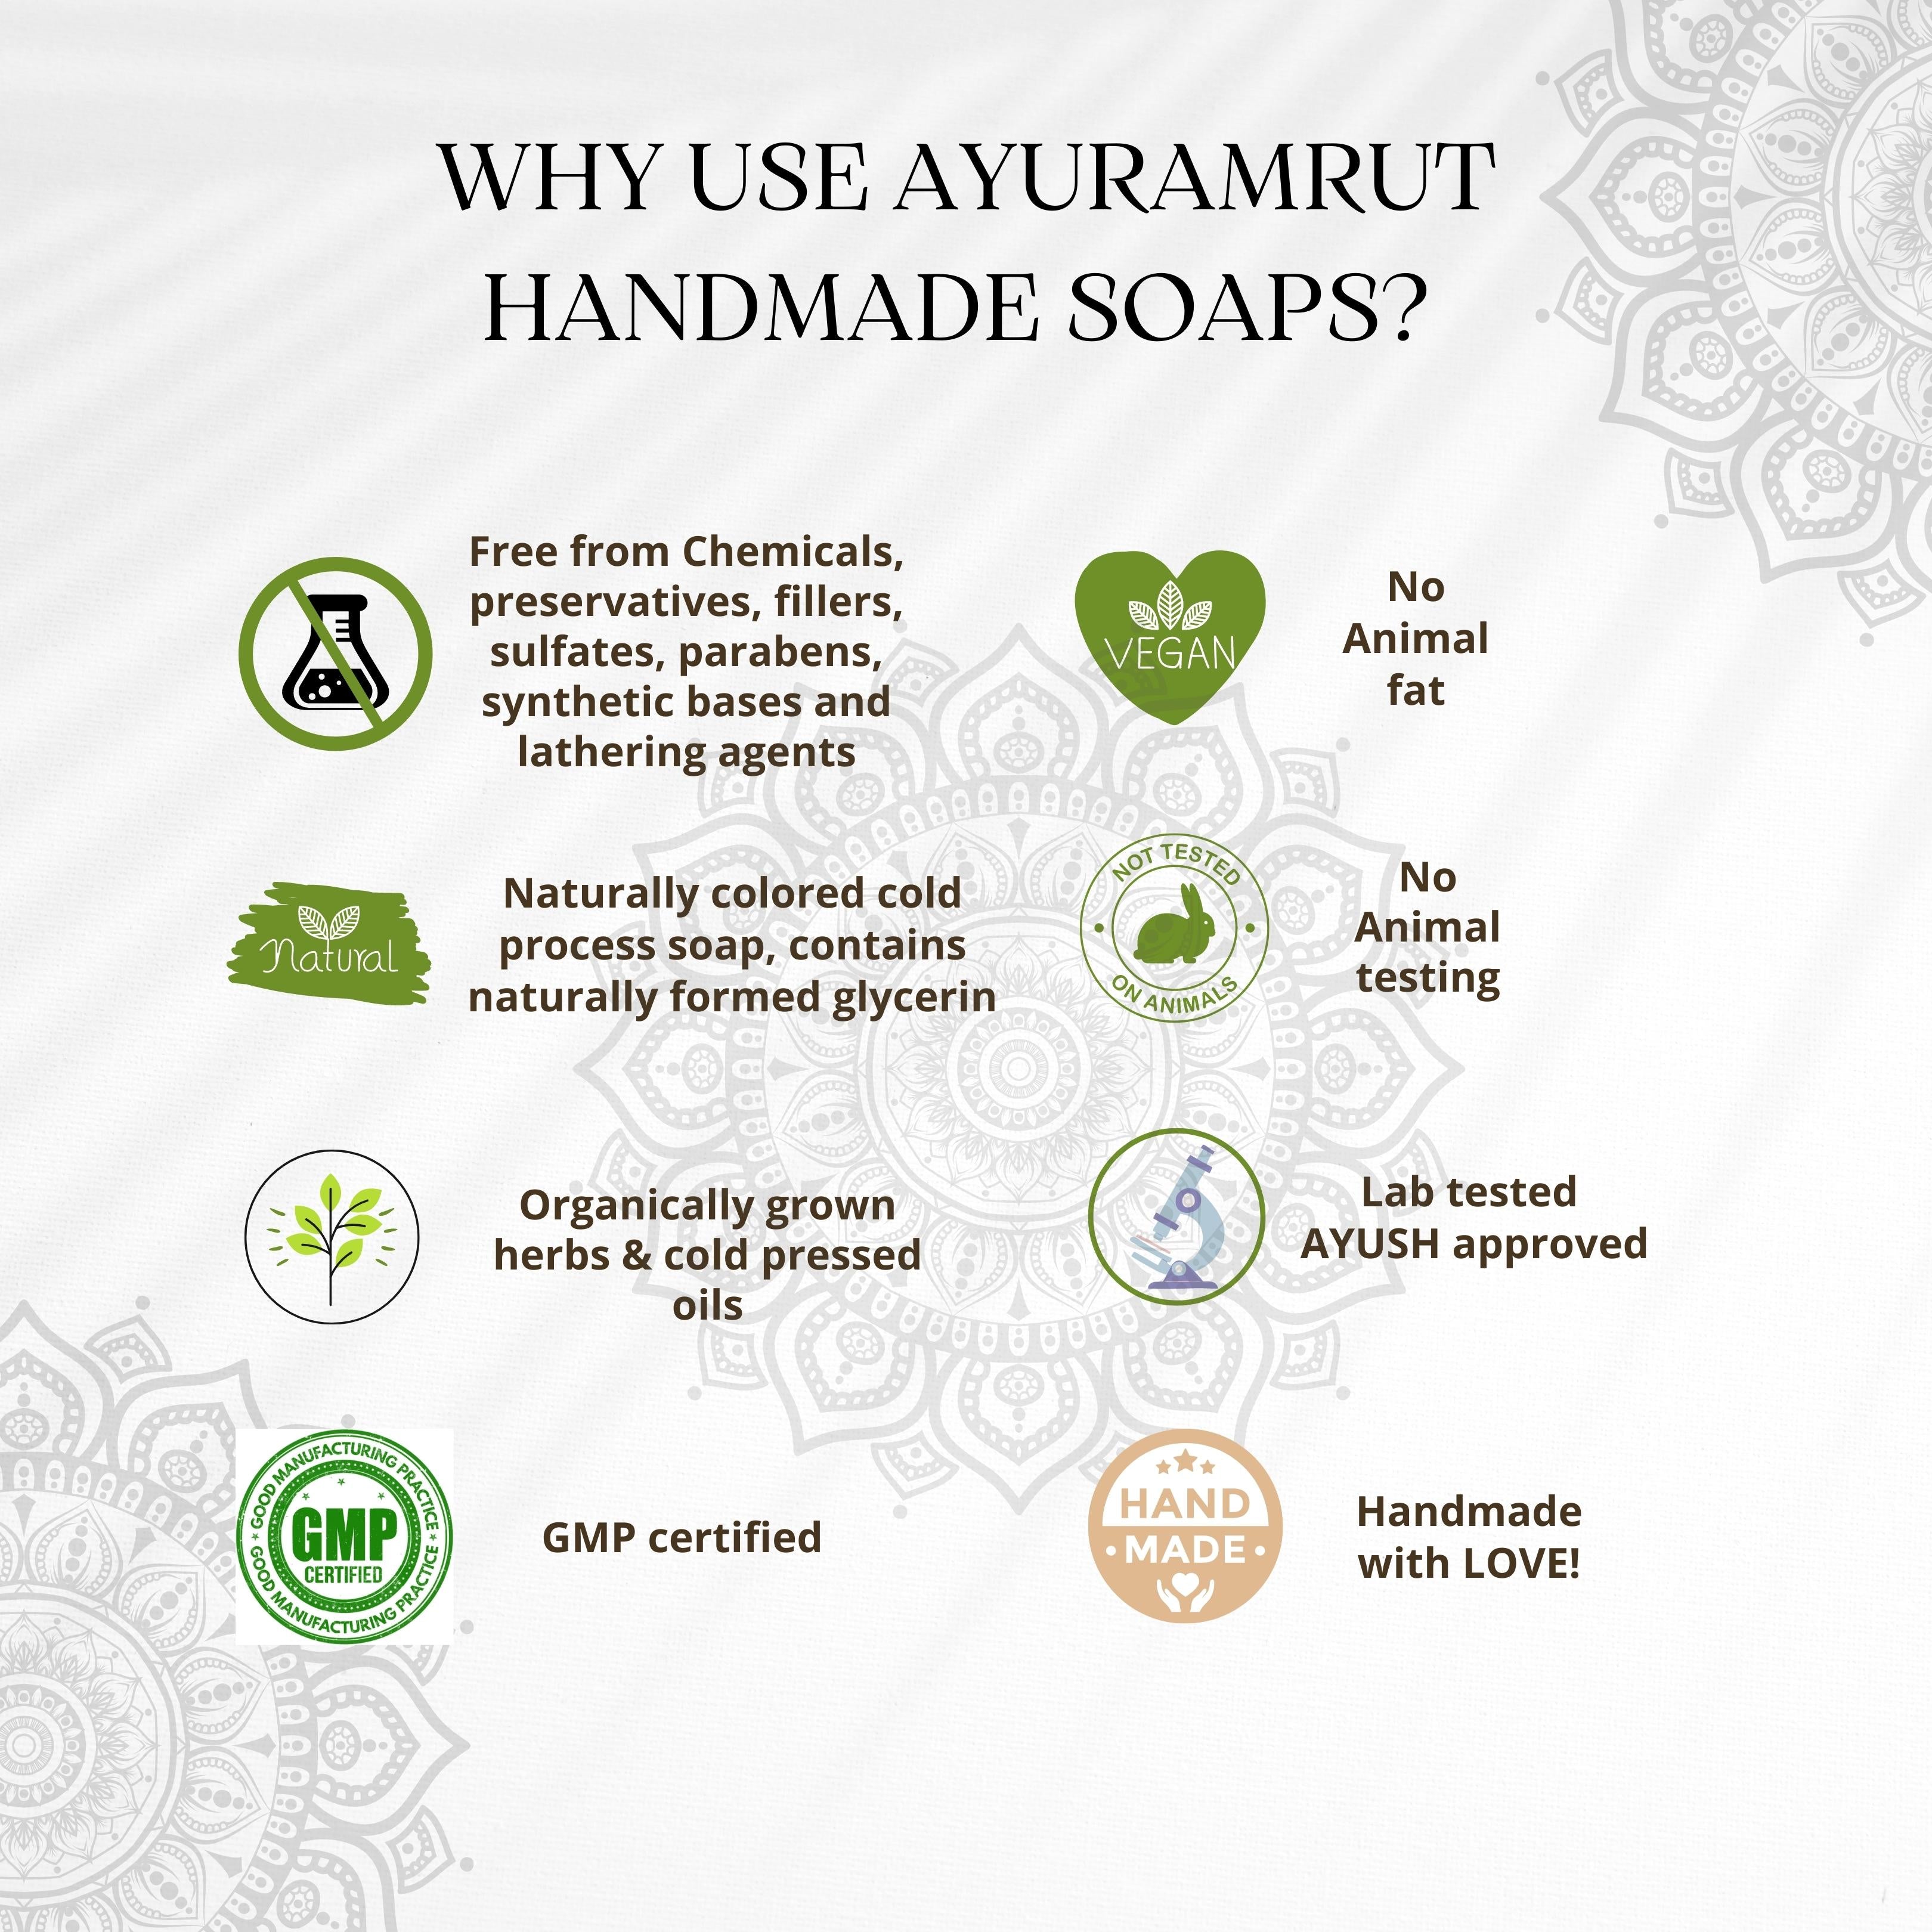 Ayuramrut Mysore Champa Natural Handmade Ayurvedic Soap (Pack of 4)